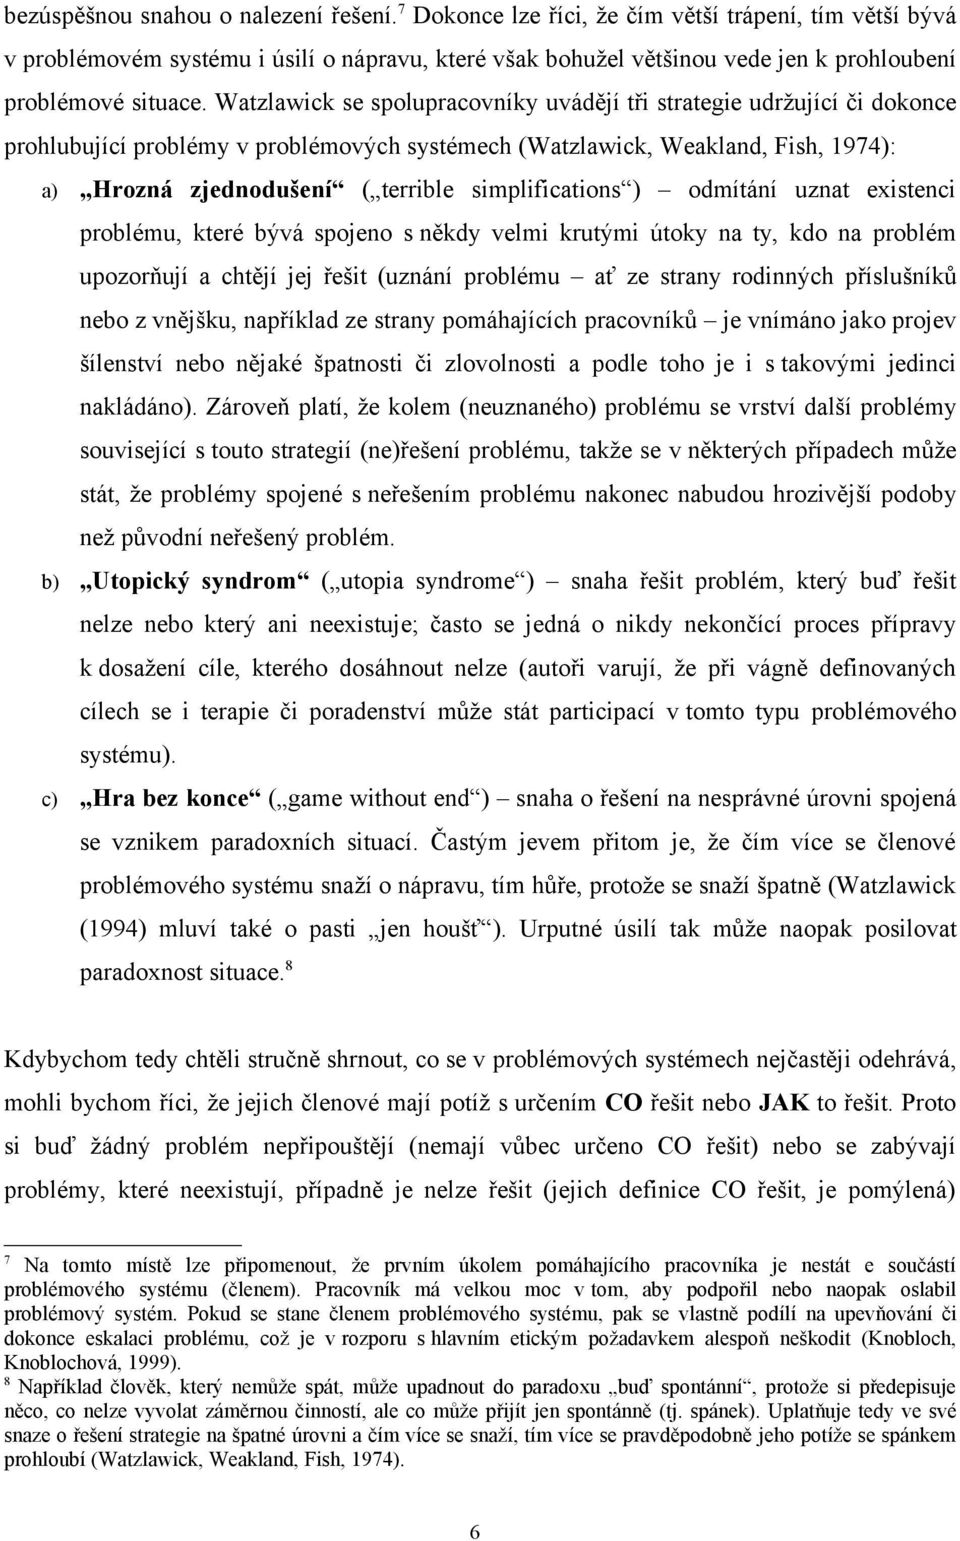 Watzlawick se spolupracovníky uvádějí tři strategie udržující či dokonce prohlubující problémy v problémových systémech (Watzlawick, Weakland, Fish, 1974): a) Hrozná zjednodušení ( terrible